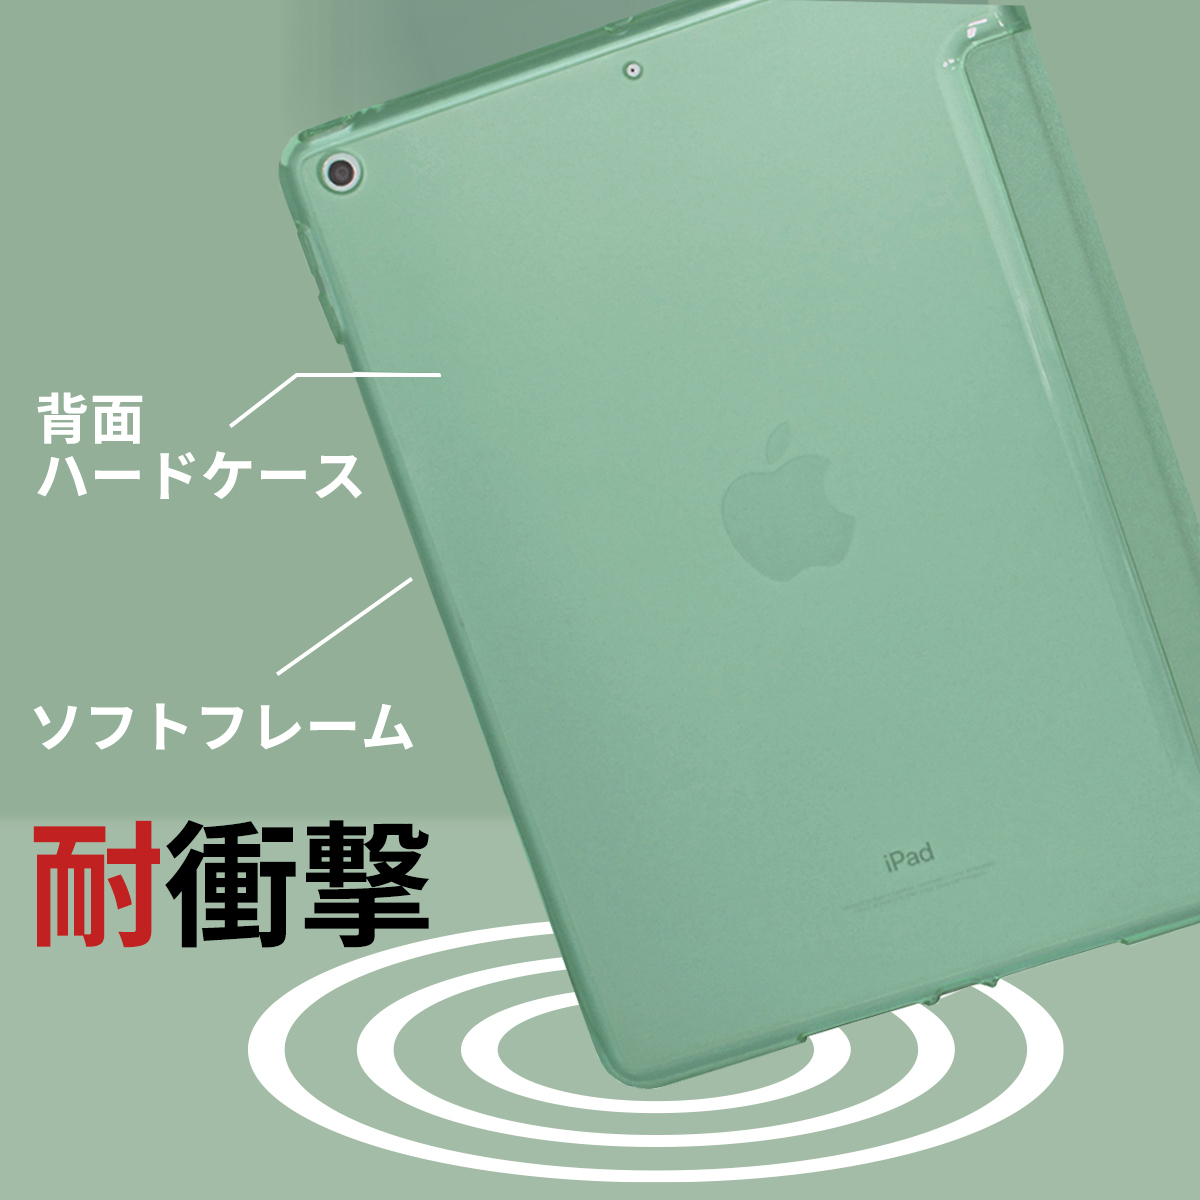 【訳あり】新品 MS factory iPad mini5 アイパッド ミニ 5 ソフトフレーム スマート TPU カバー スタンド ケース / ティーグリーン D1_耐衝撃ソフトフレームケース